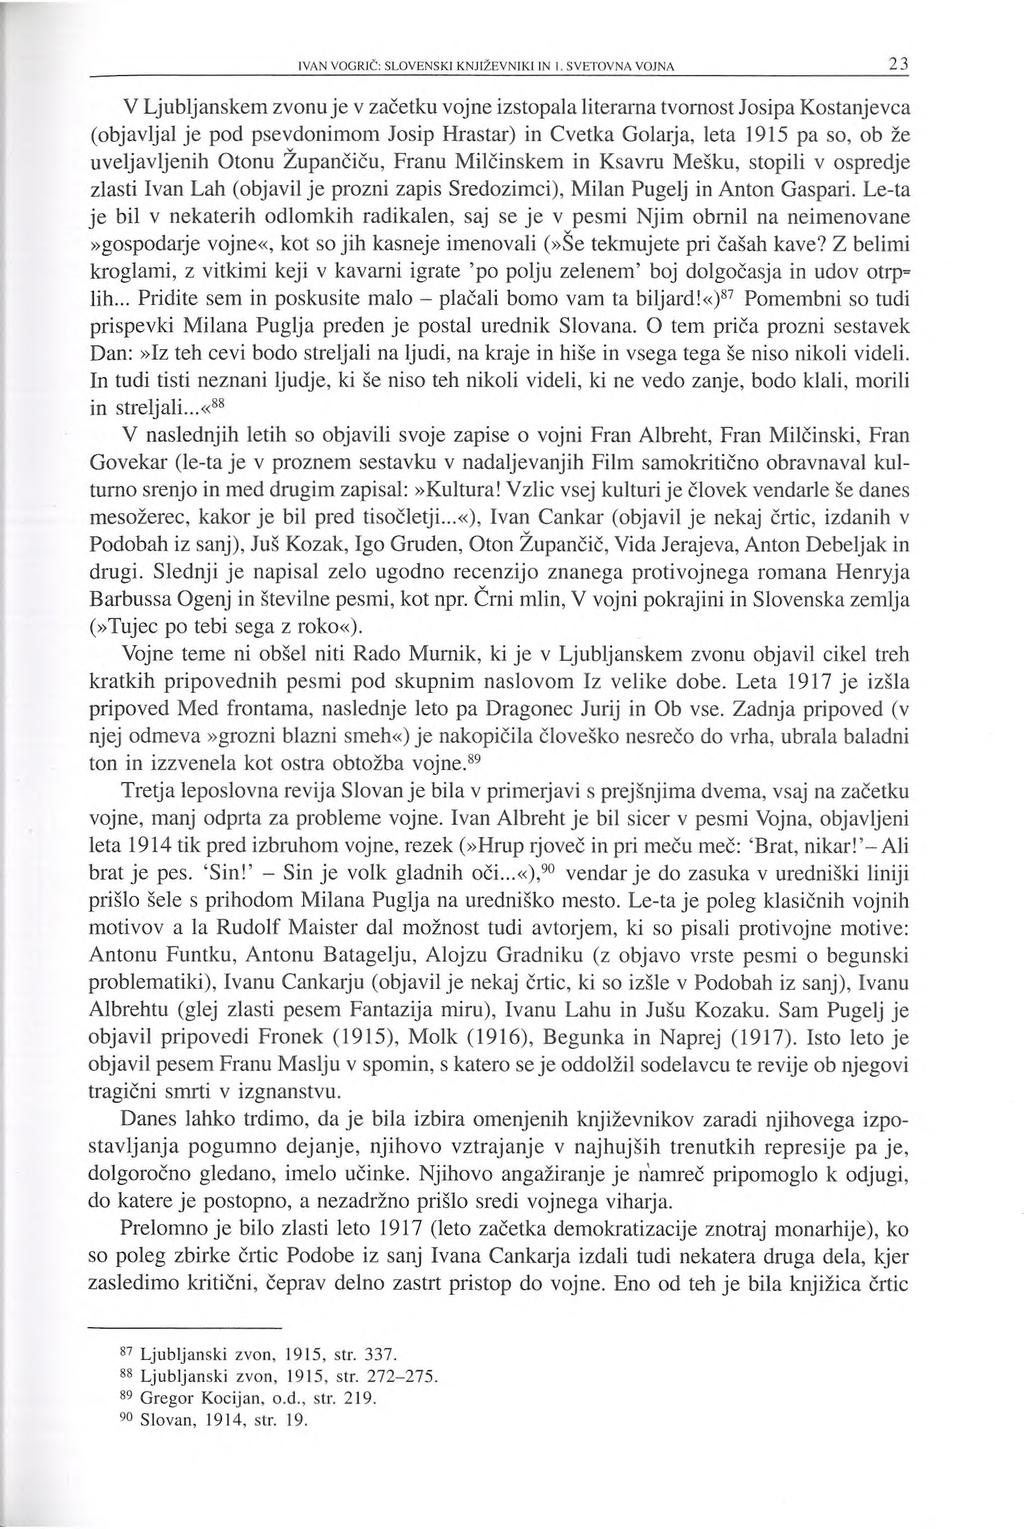 V Ljubljanskem zvonu je v začetku vojne izstopala literarna tvornost Josipa Kostanjevca (objavljal je pod psevdonimom Josip Hrastar) in Cvetka Golarja, leta 1915 pa so, ob že uveljavljenih Otonu